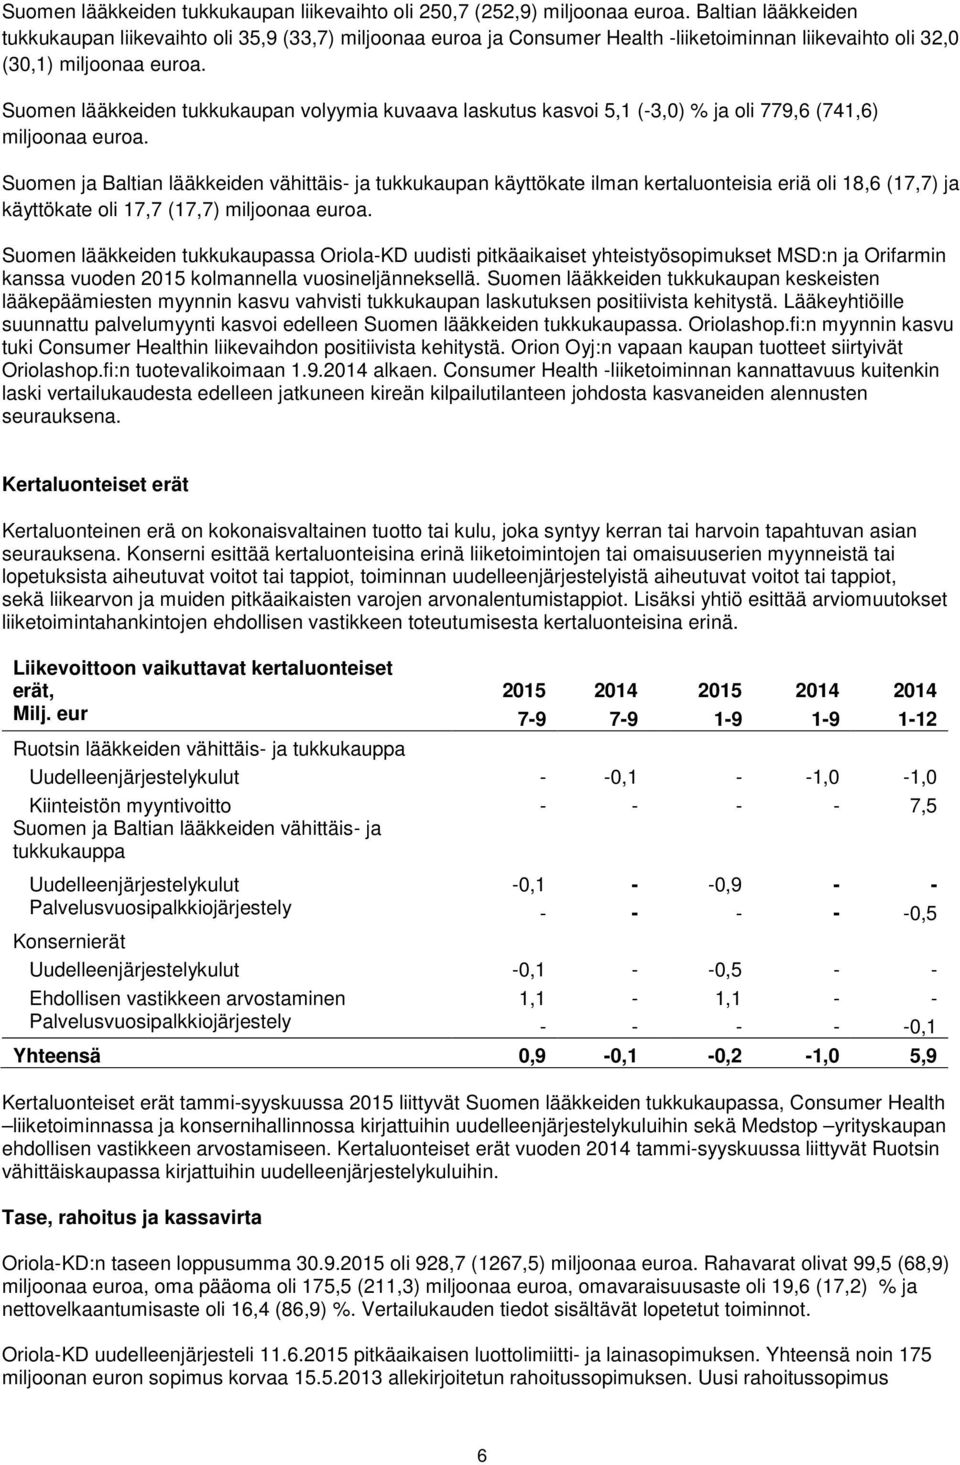 Suomen lääkkeiden tukkukaupan volyymia kuvaava laskutus kasvoi 5,1 (-3,0) % ja oli 779,6 (741,6) miljoonaa euroa.